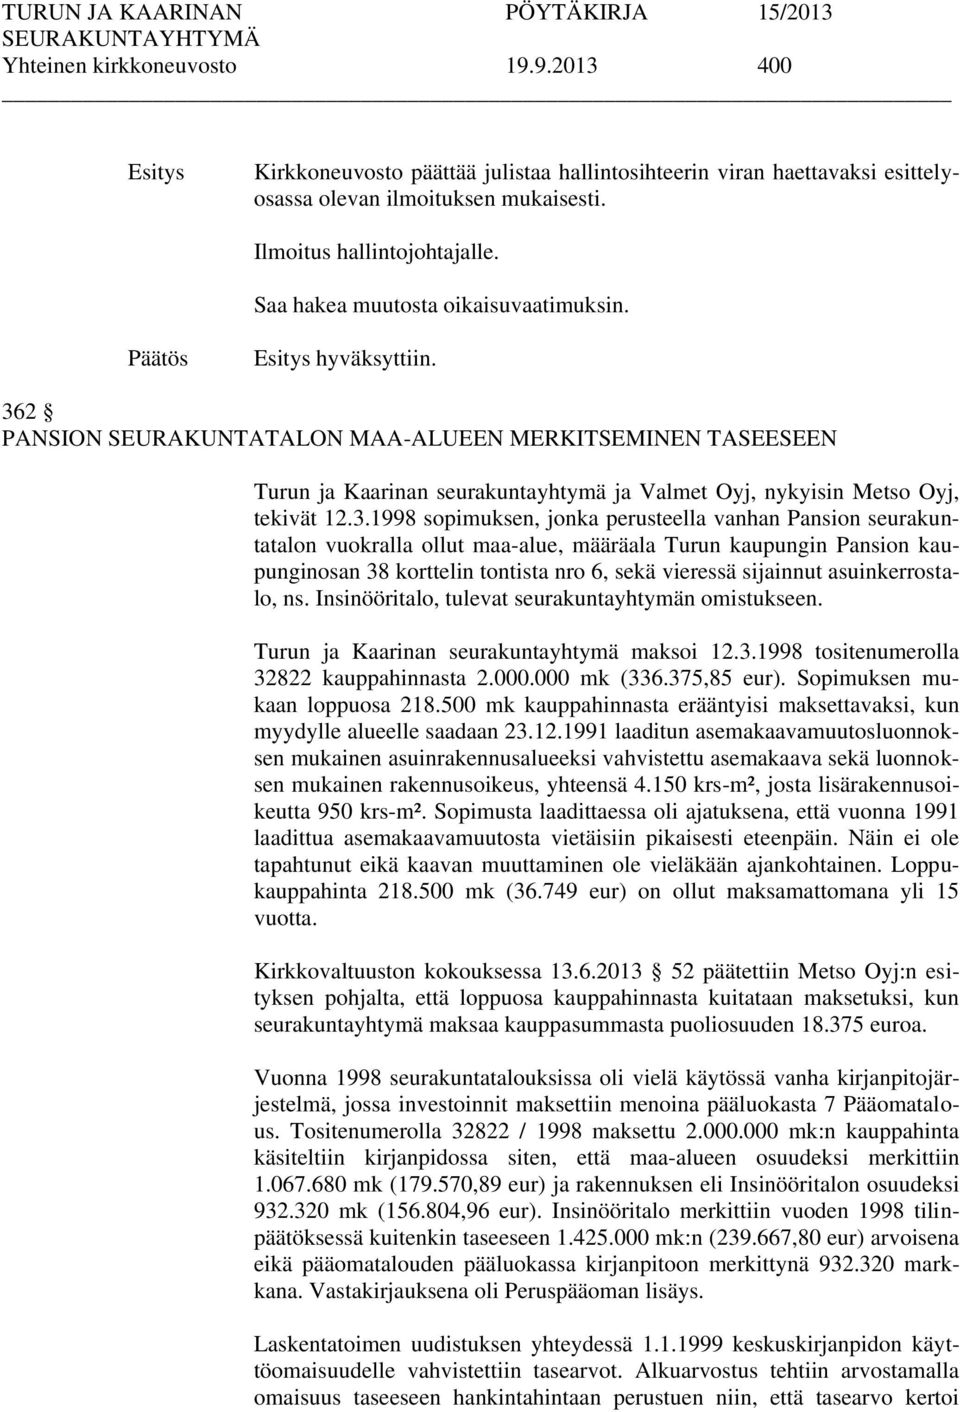 2 PANSION SEURAKUNTATALON MAA-ALUEEN MERKITSEMINEN TASEESEEN Turun ja Kaarinan seurakuntayhtymä ja Valmet Oyj, nykyisin Metso Oyj, tekivät 12.3.